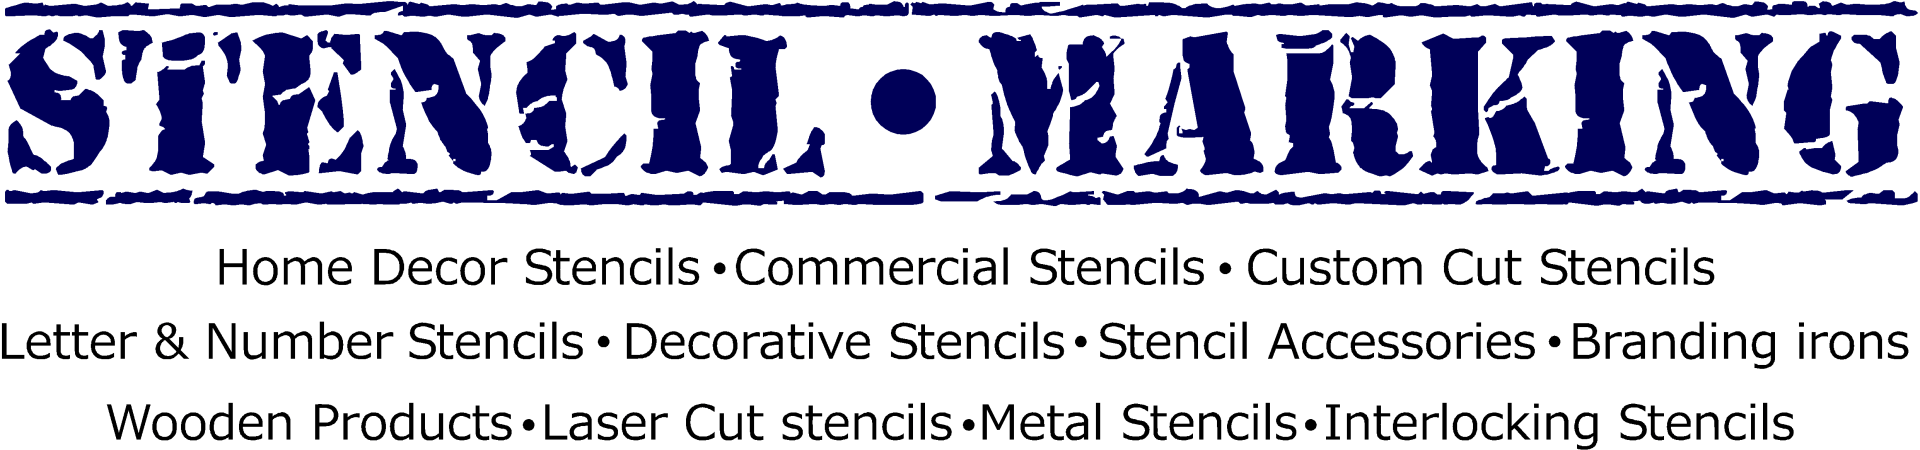 Stencil marking logo